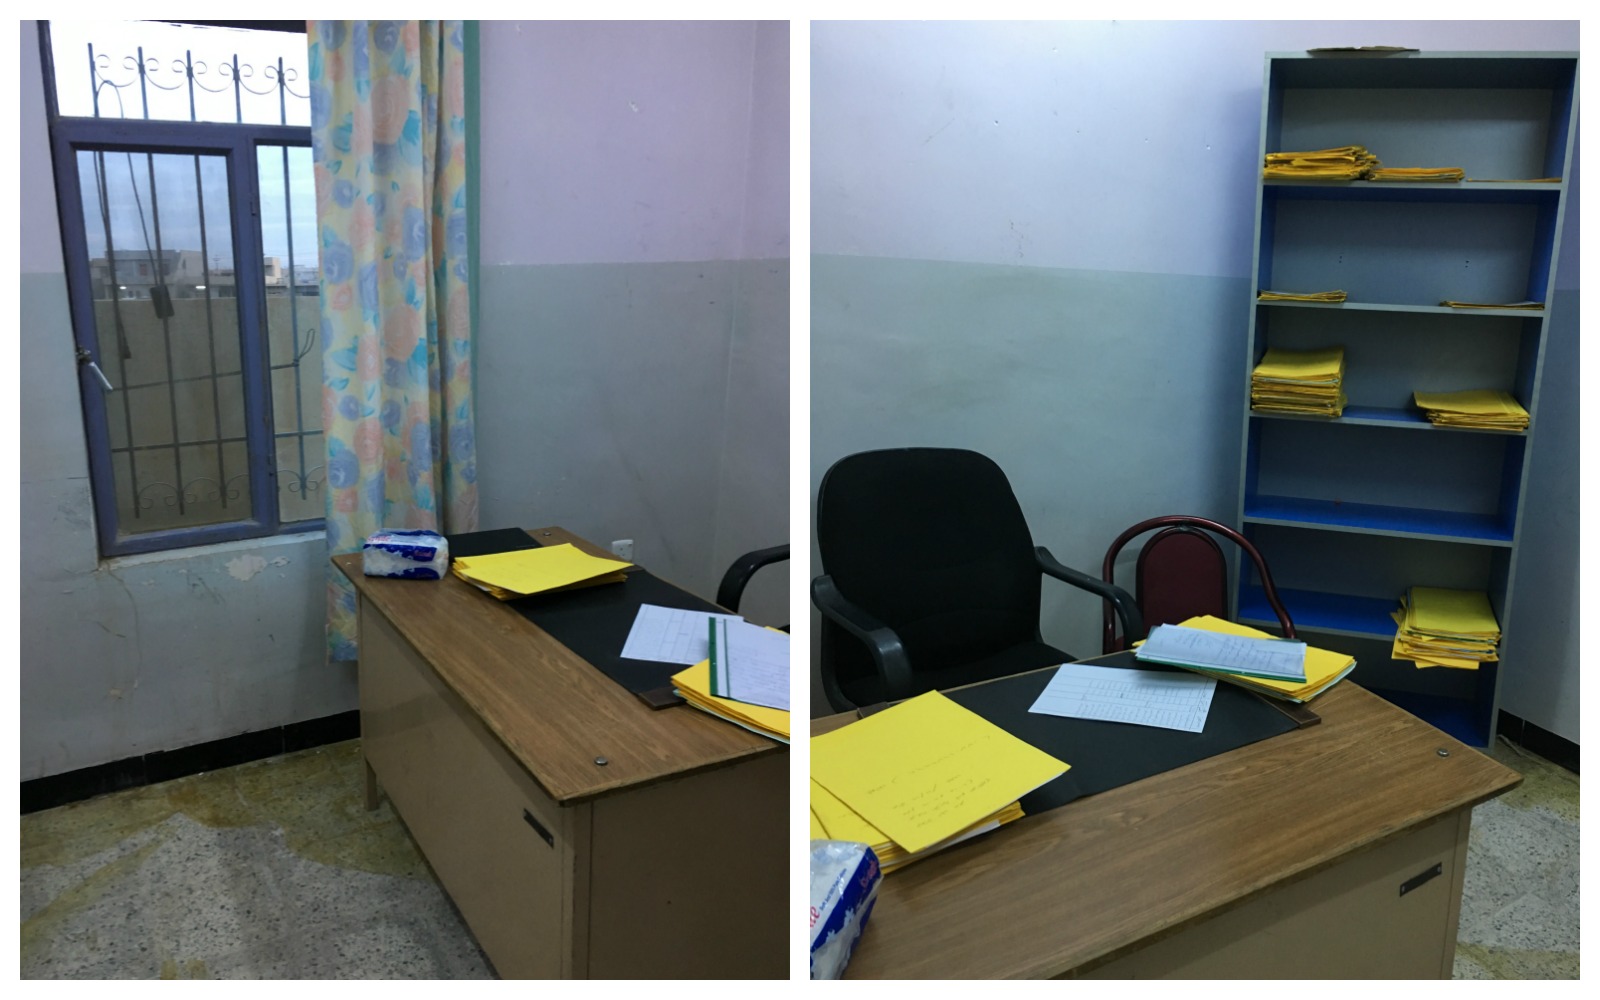 MP Youkhana and COA Habib’s temporary office  on the outskirts of Qaraqosh